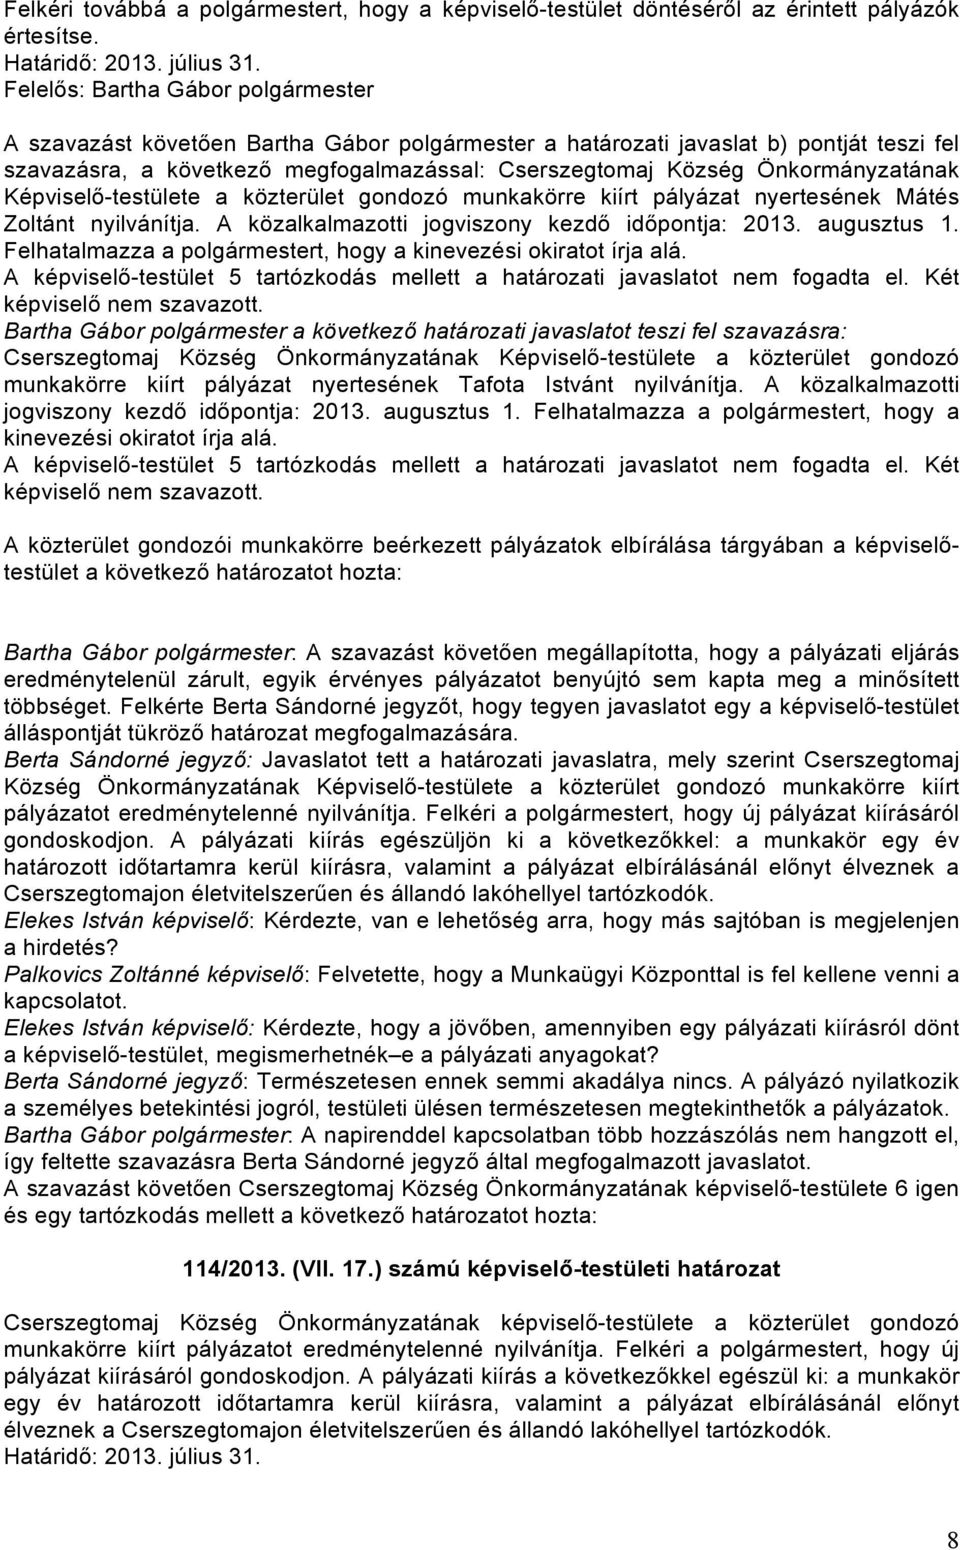 Önkormányzatának Képviselő-testülete a közterület gondozó munkakörre kiírt pályázat nyertesének Mátés Zoltánt nyilvánítja. A közalkalmazotti jogviszony kezdő időpontja: 2013. augusztus 1.